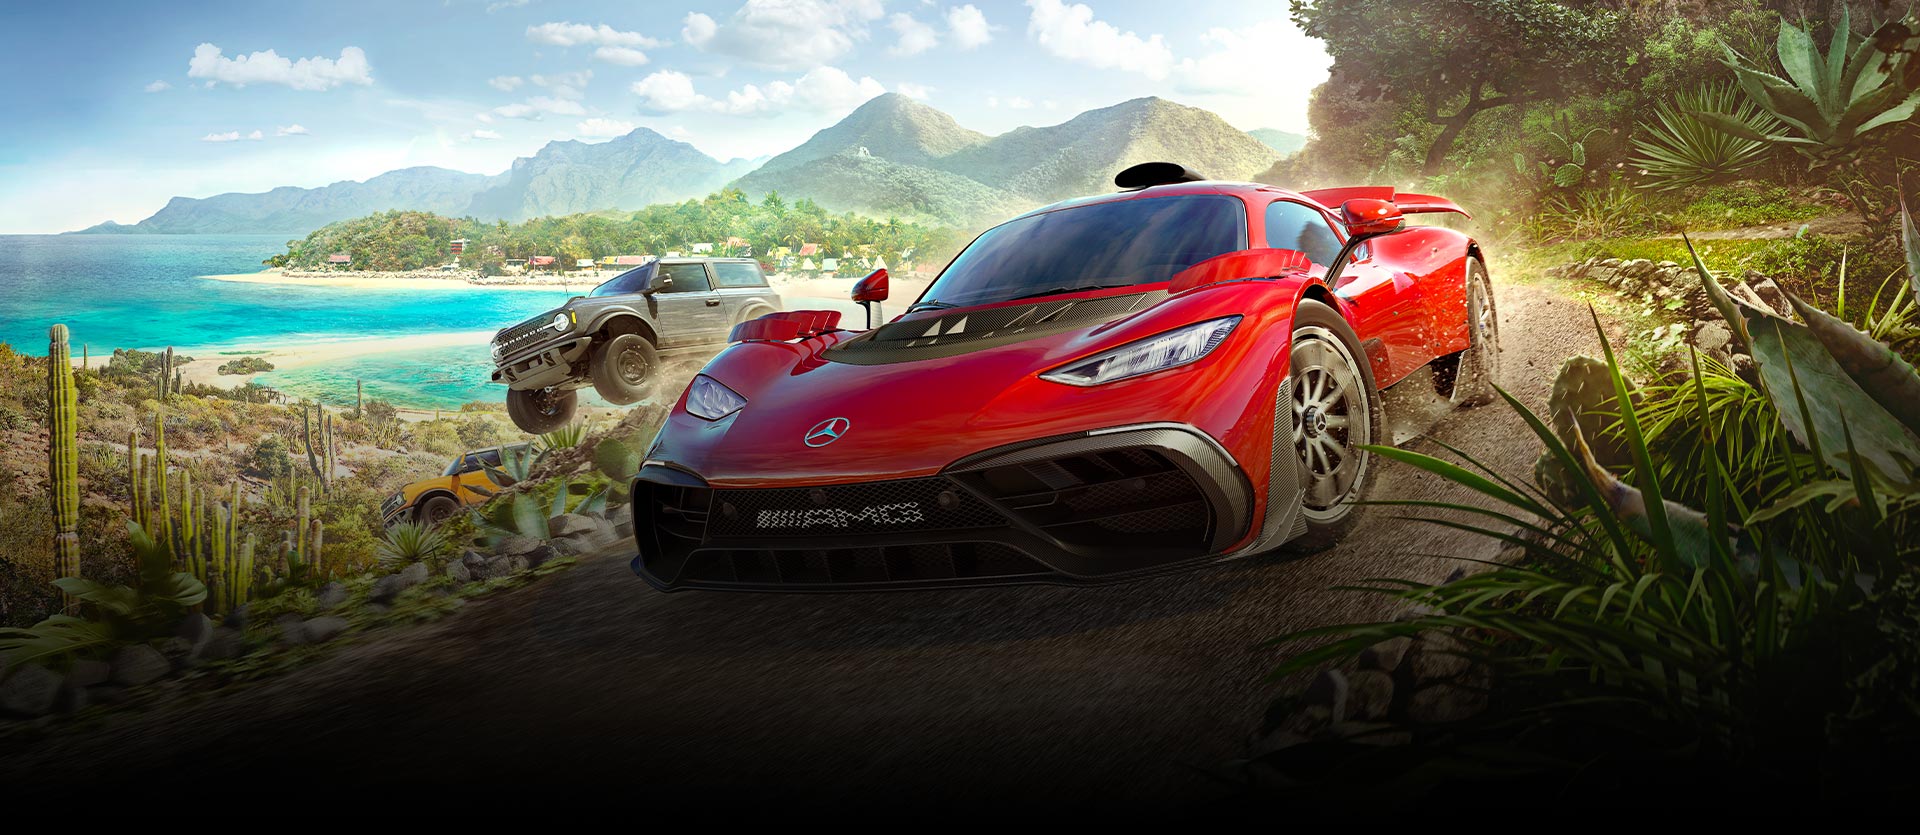 Bilar från Forza Horizon 5 förflyttar sig snabbt över en grusväg vid vatten och en mängd växter.